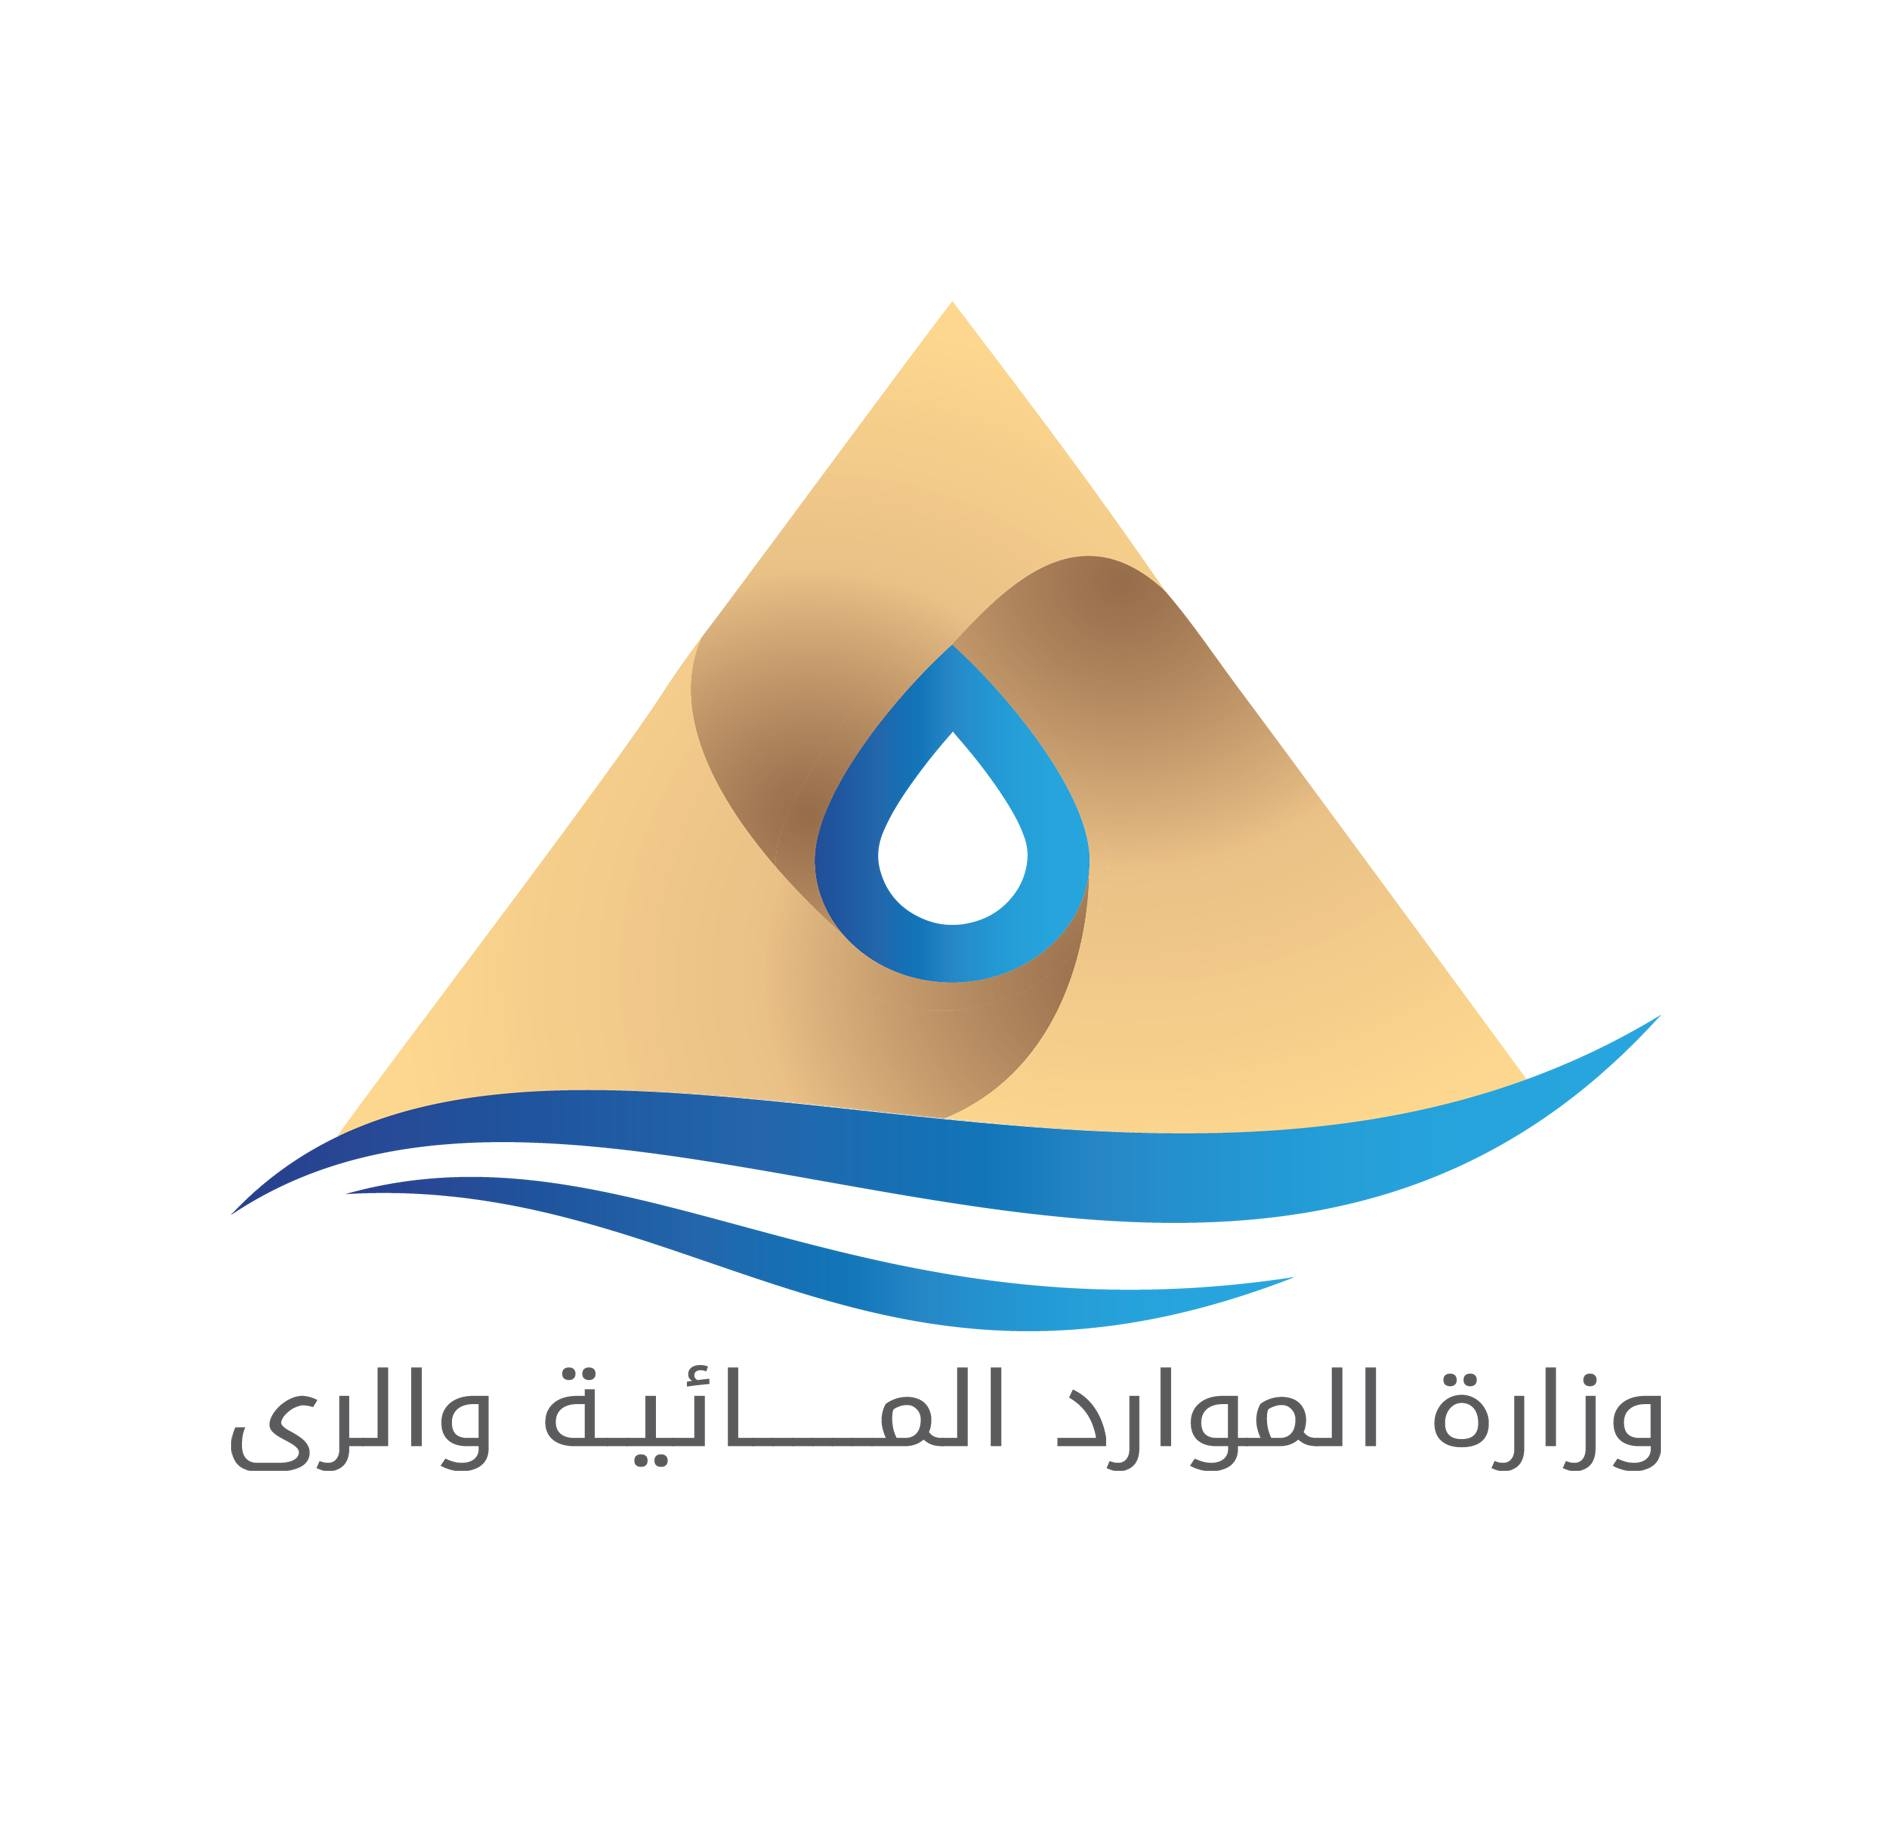 وزارة الموارد المائية والري